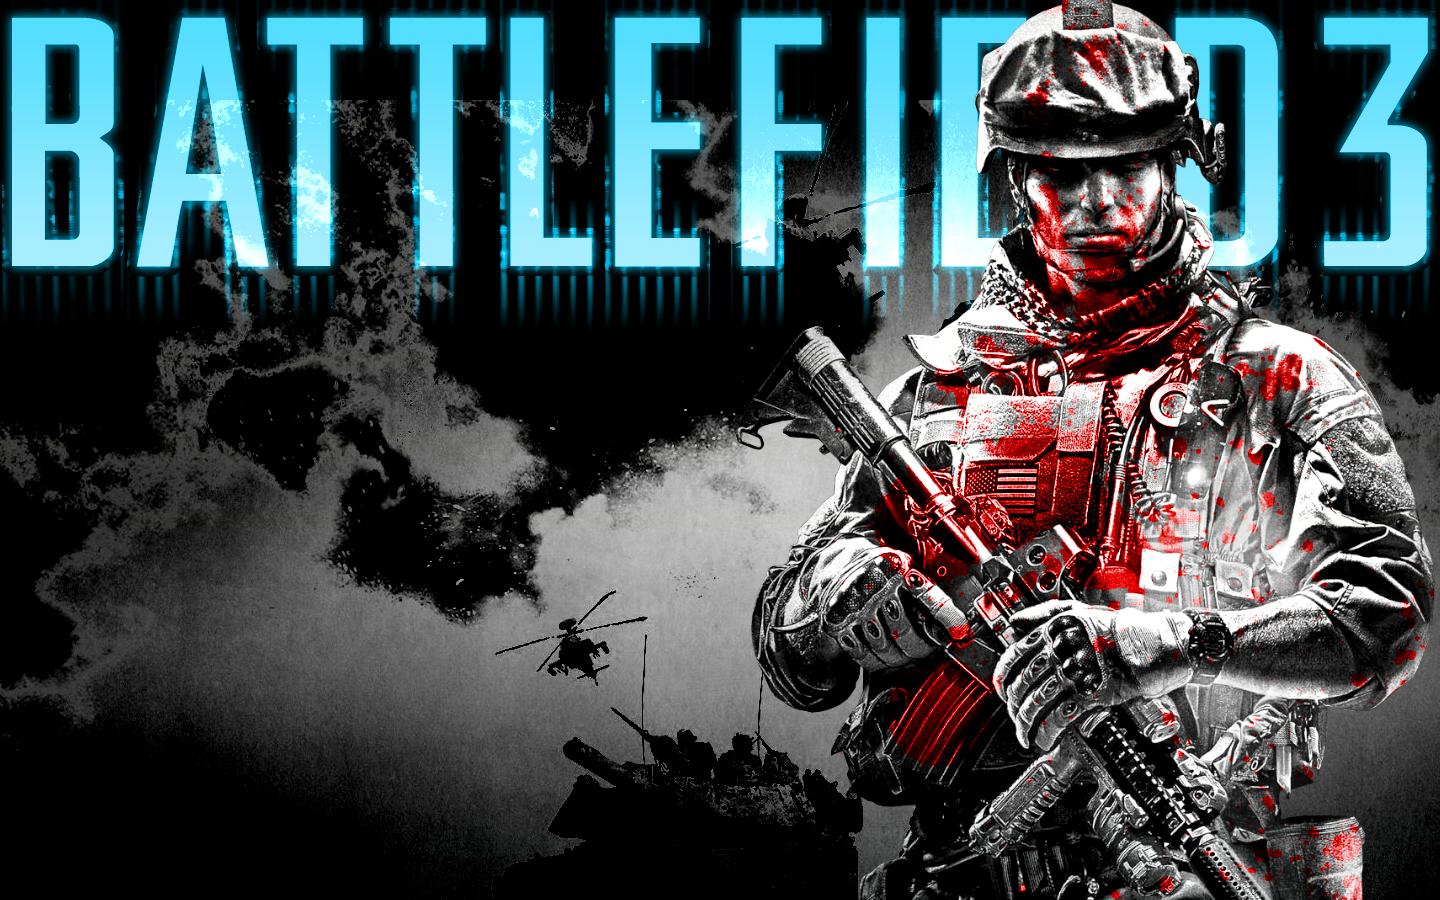 http://3.bp.blogspot.com/-rjVYONbbcs8/TkoYiS9CCuI/AAAAAAAAArw/tmIjSYn-UR8/s1600/Battlefield+3+Wallpaper+game+download.jpg